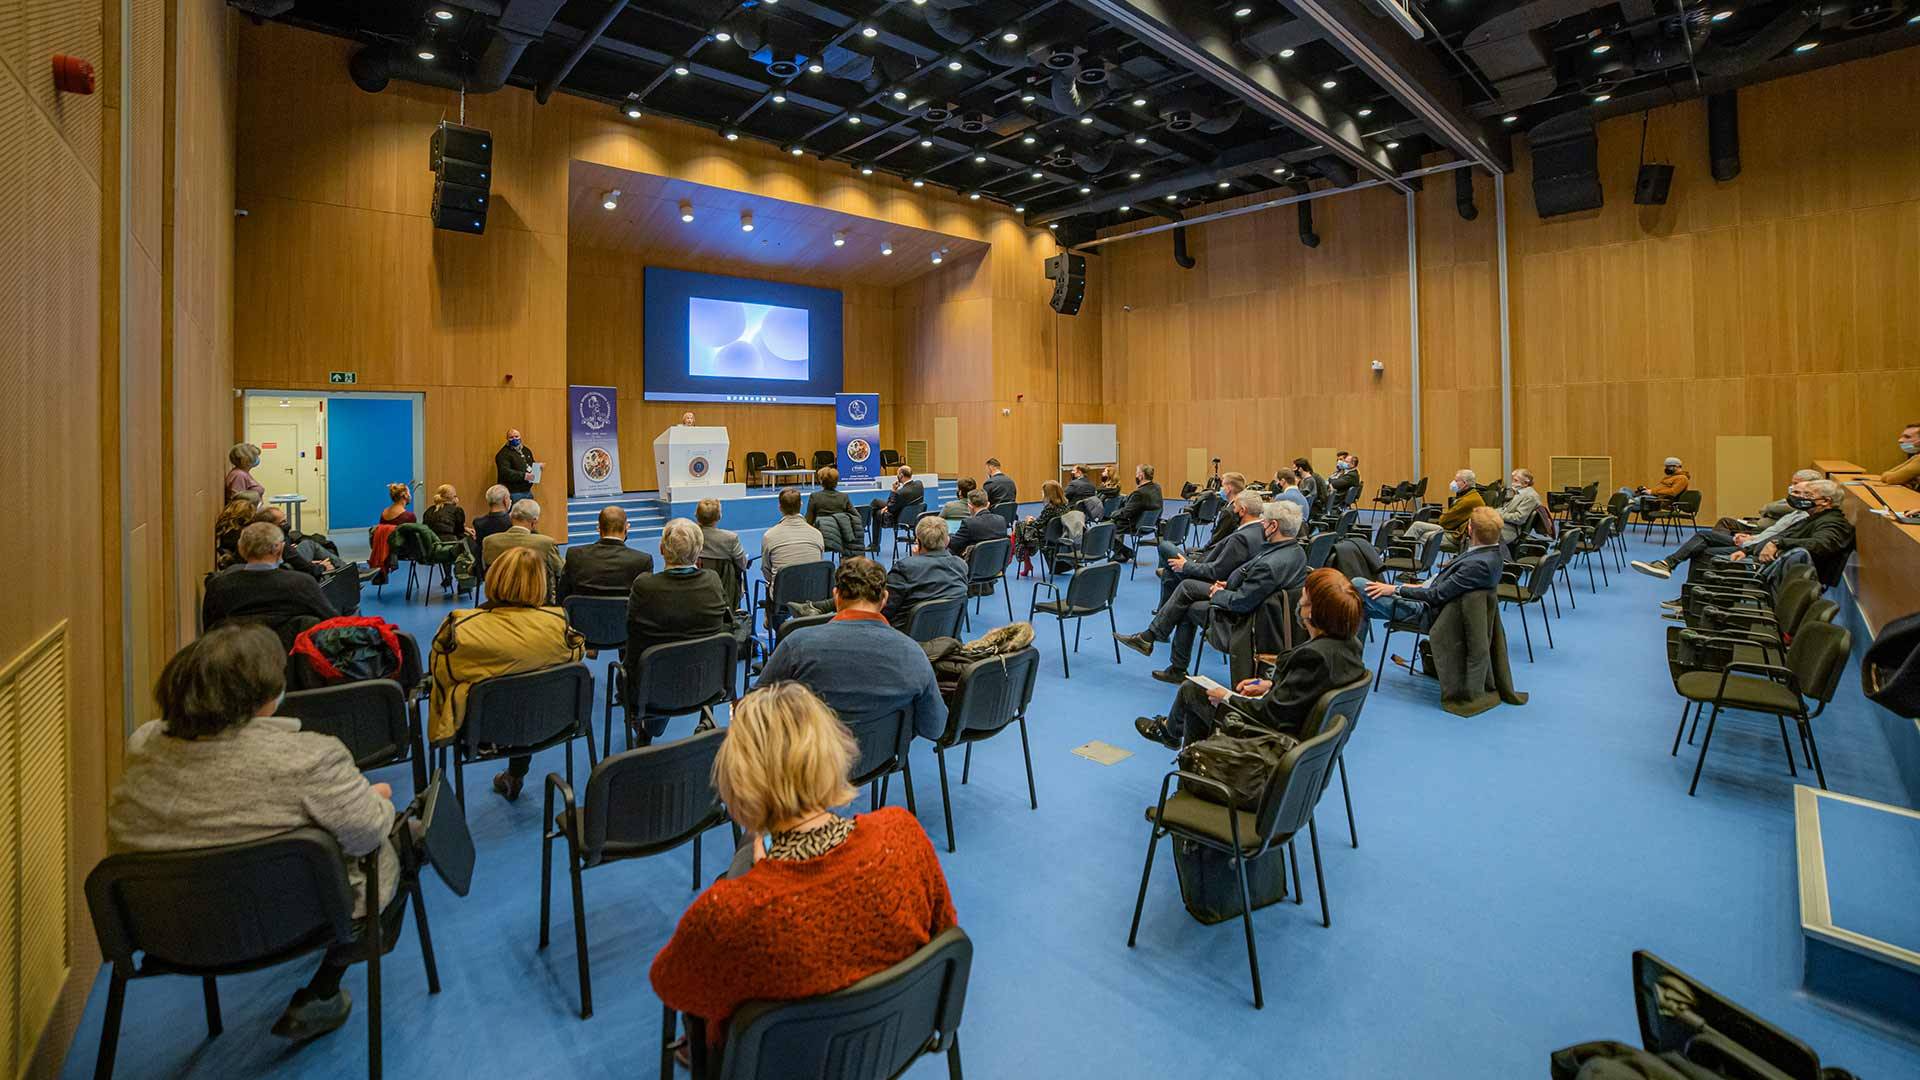 Nyerges Mihály-emlékkonferencia: visszatekintés 2022 sporteredményeire tudományos szemmel